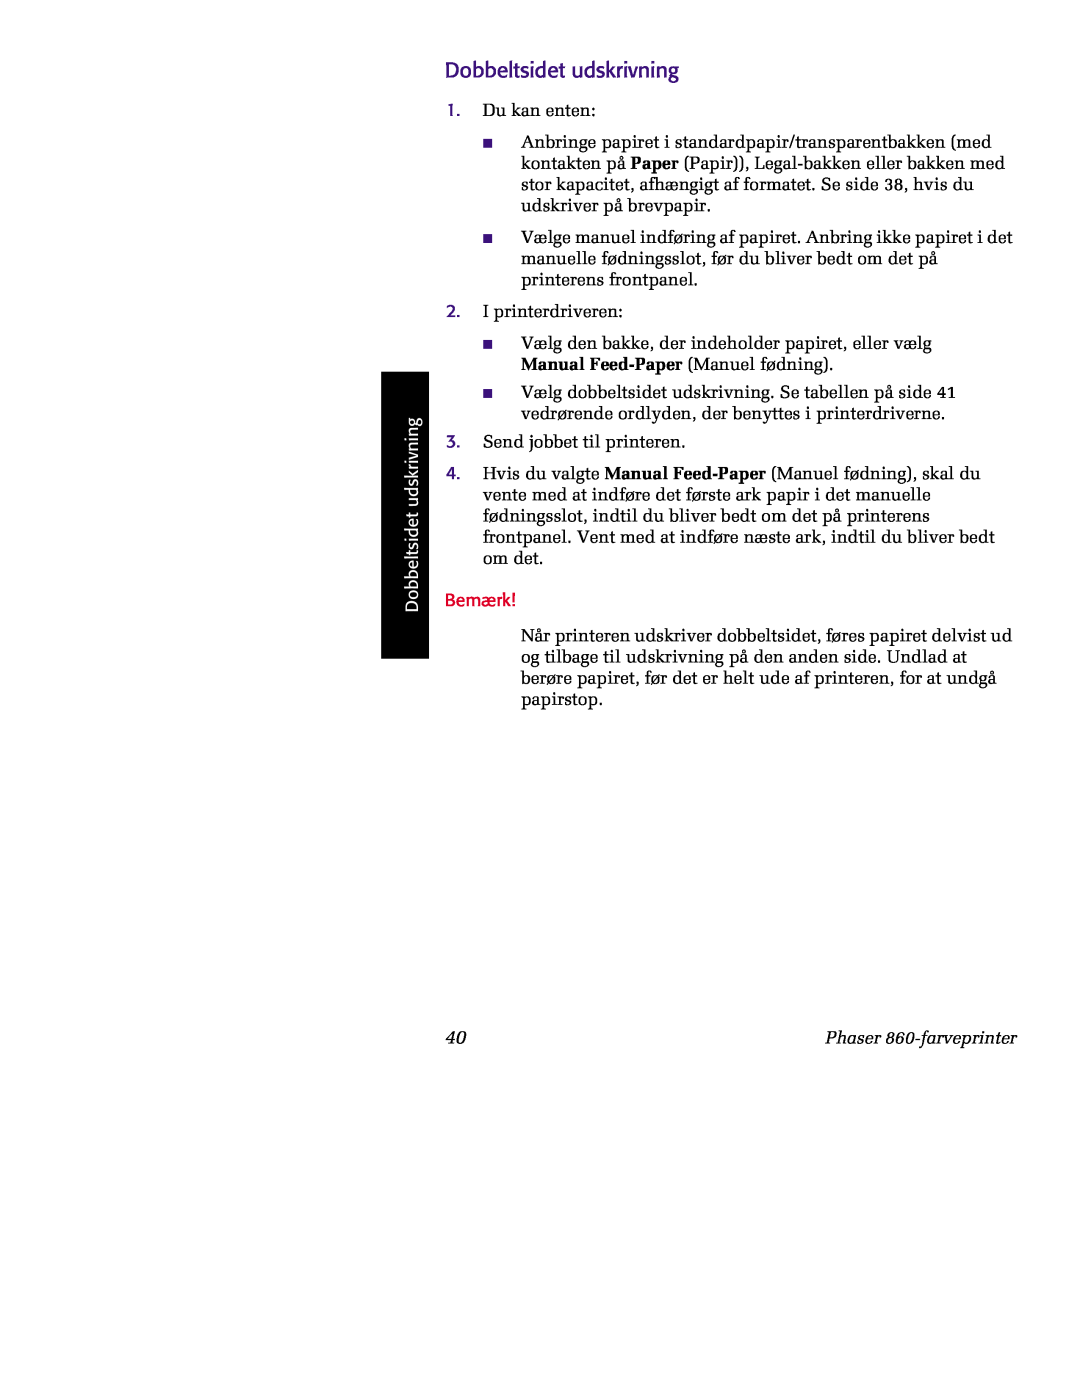 Tektronix manual Dobbeltsidet udskrivning, Bemærk, Phaser 860-farveprinter 